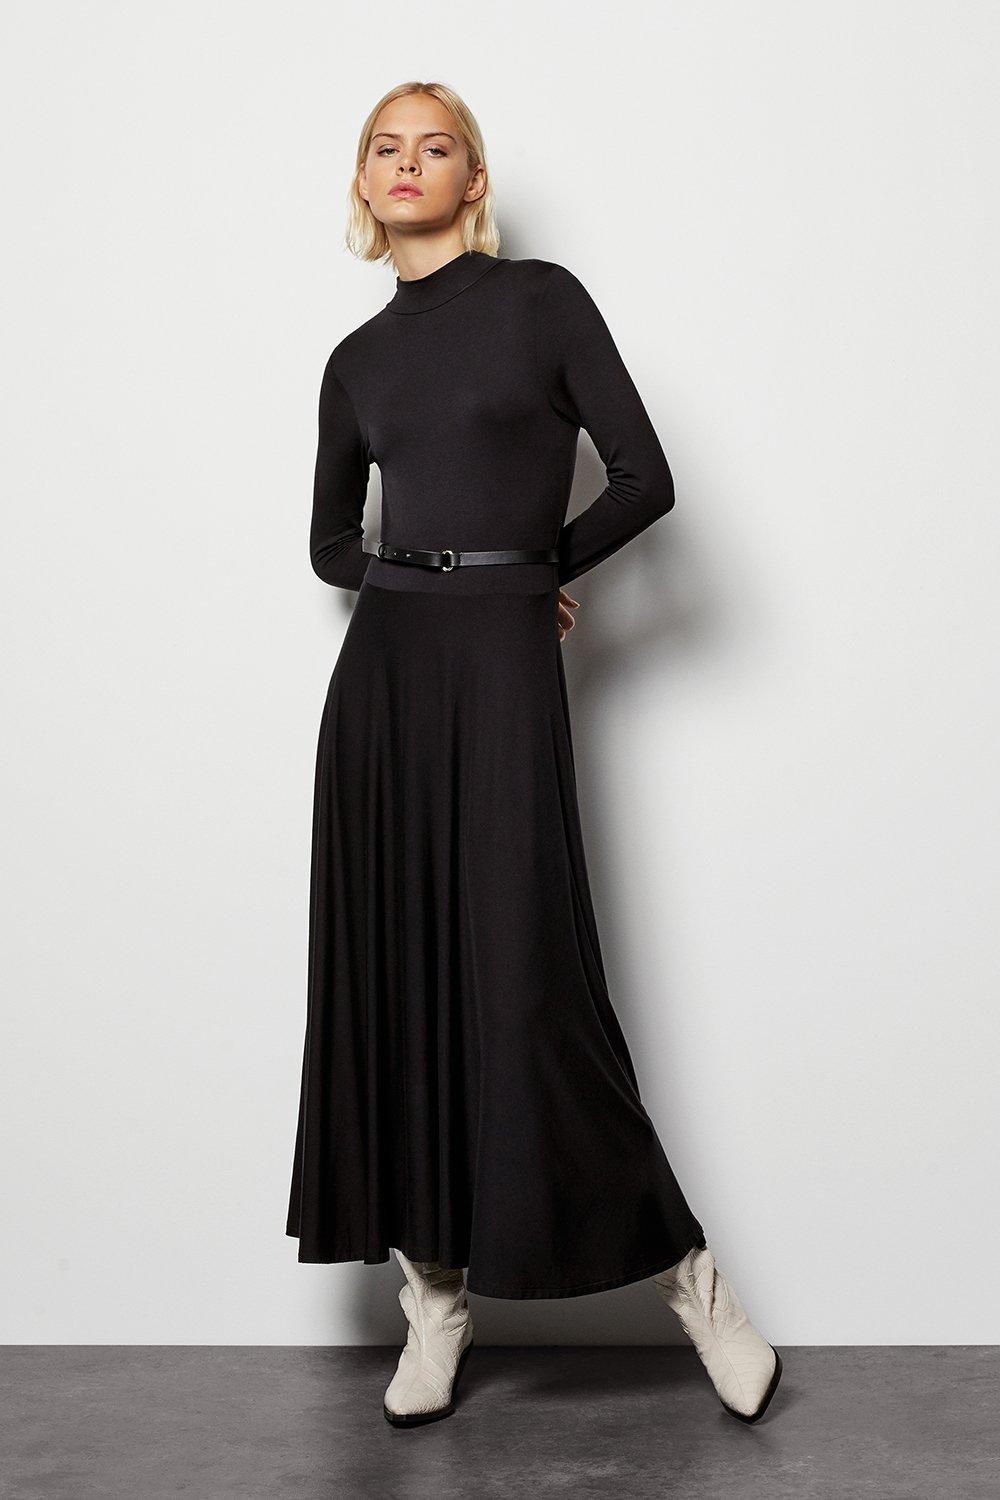 karen millen black dress with belt